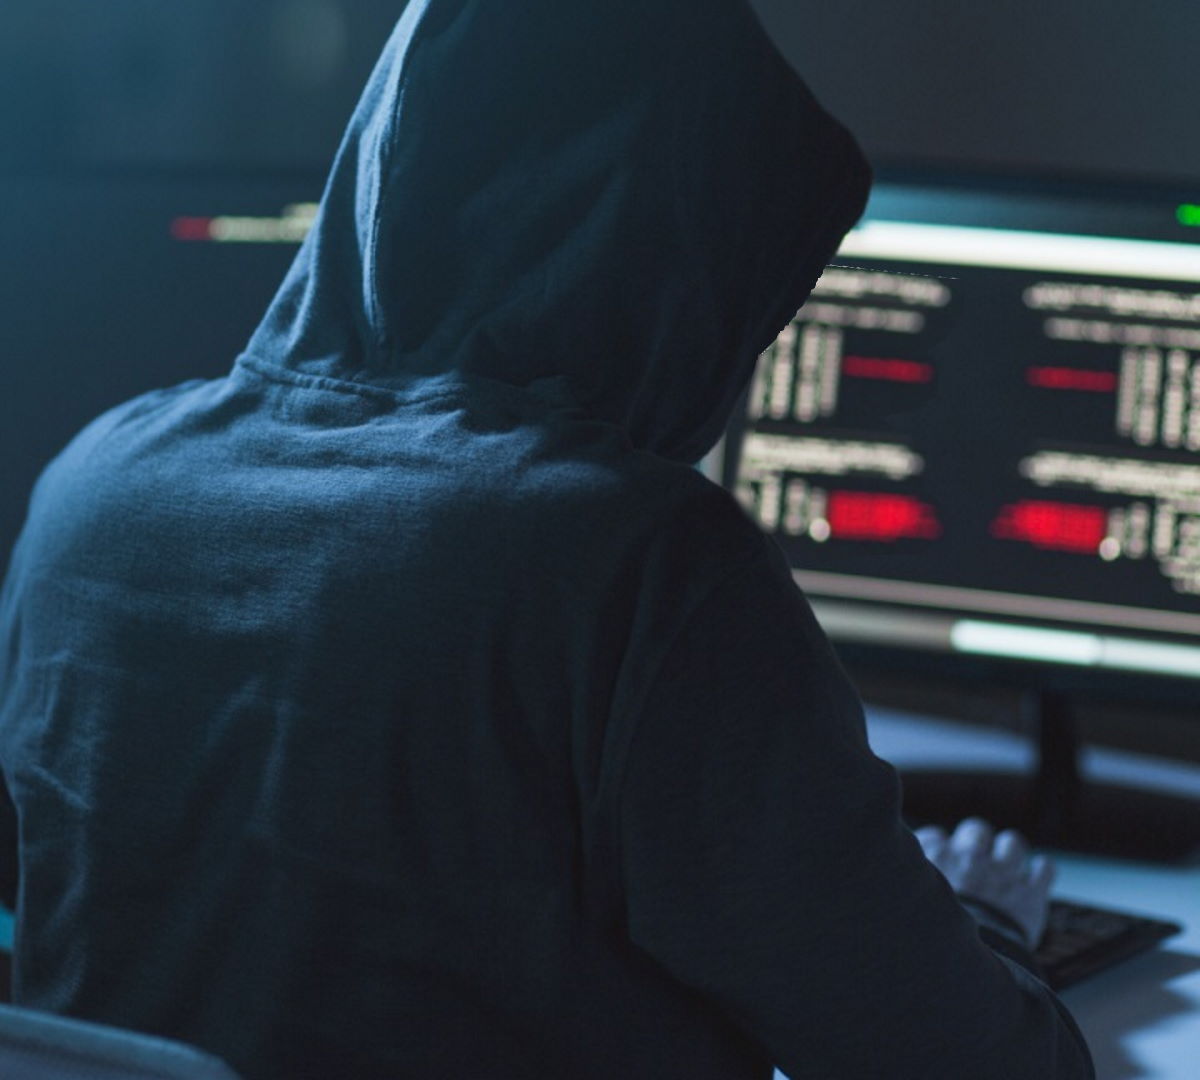 Gli Usa hanno offerto fino a 15 milioni di dollari per informazioni sul gruppo hacker Conti